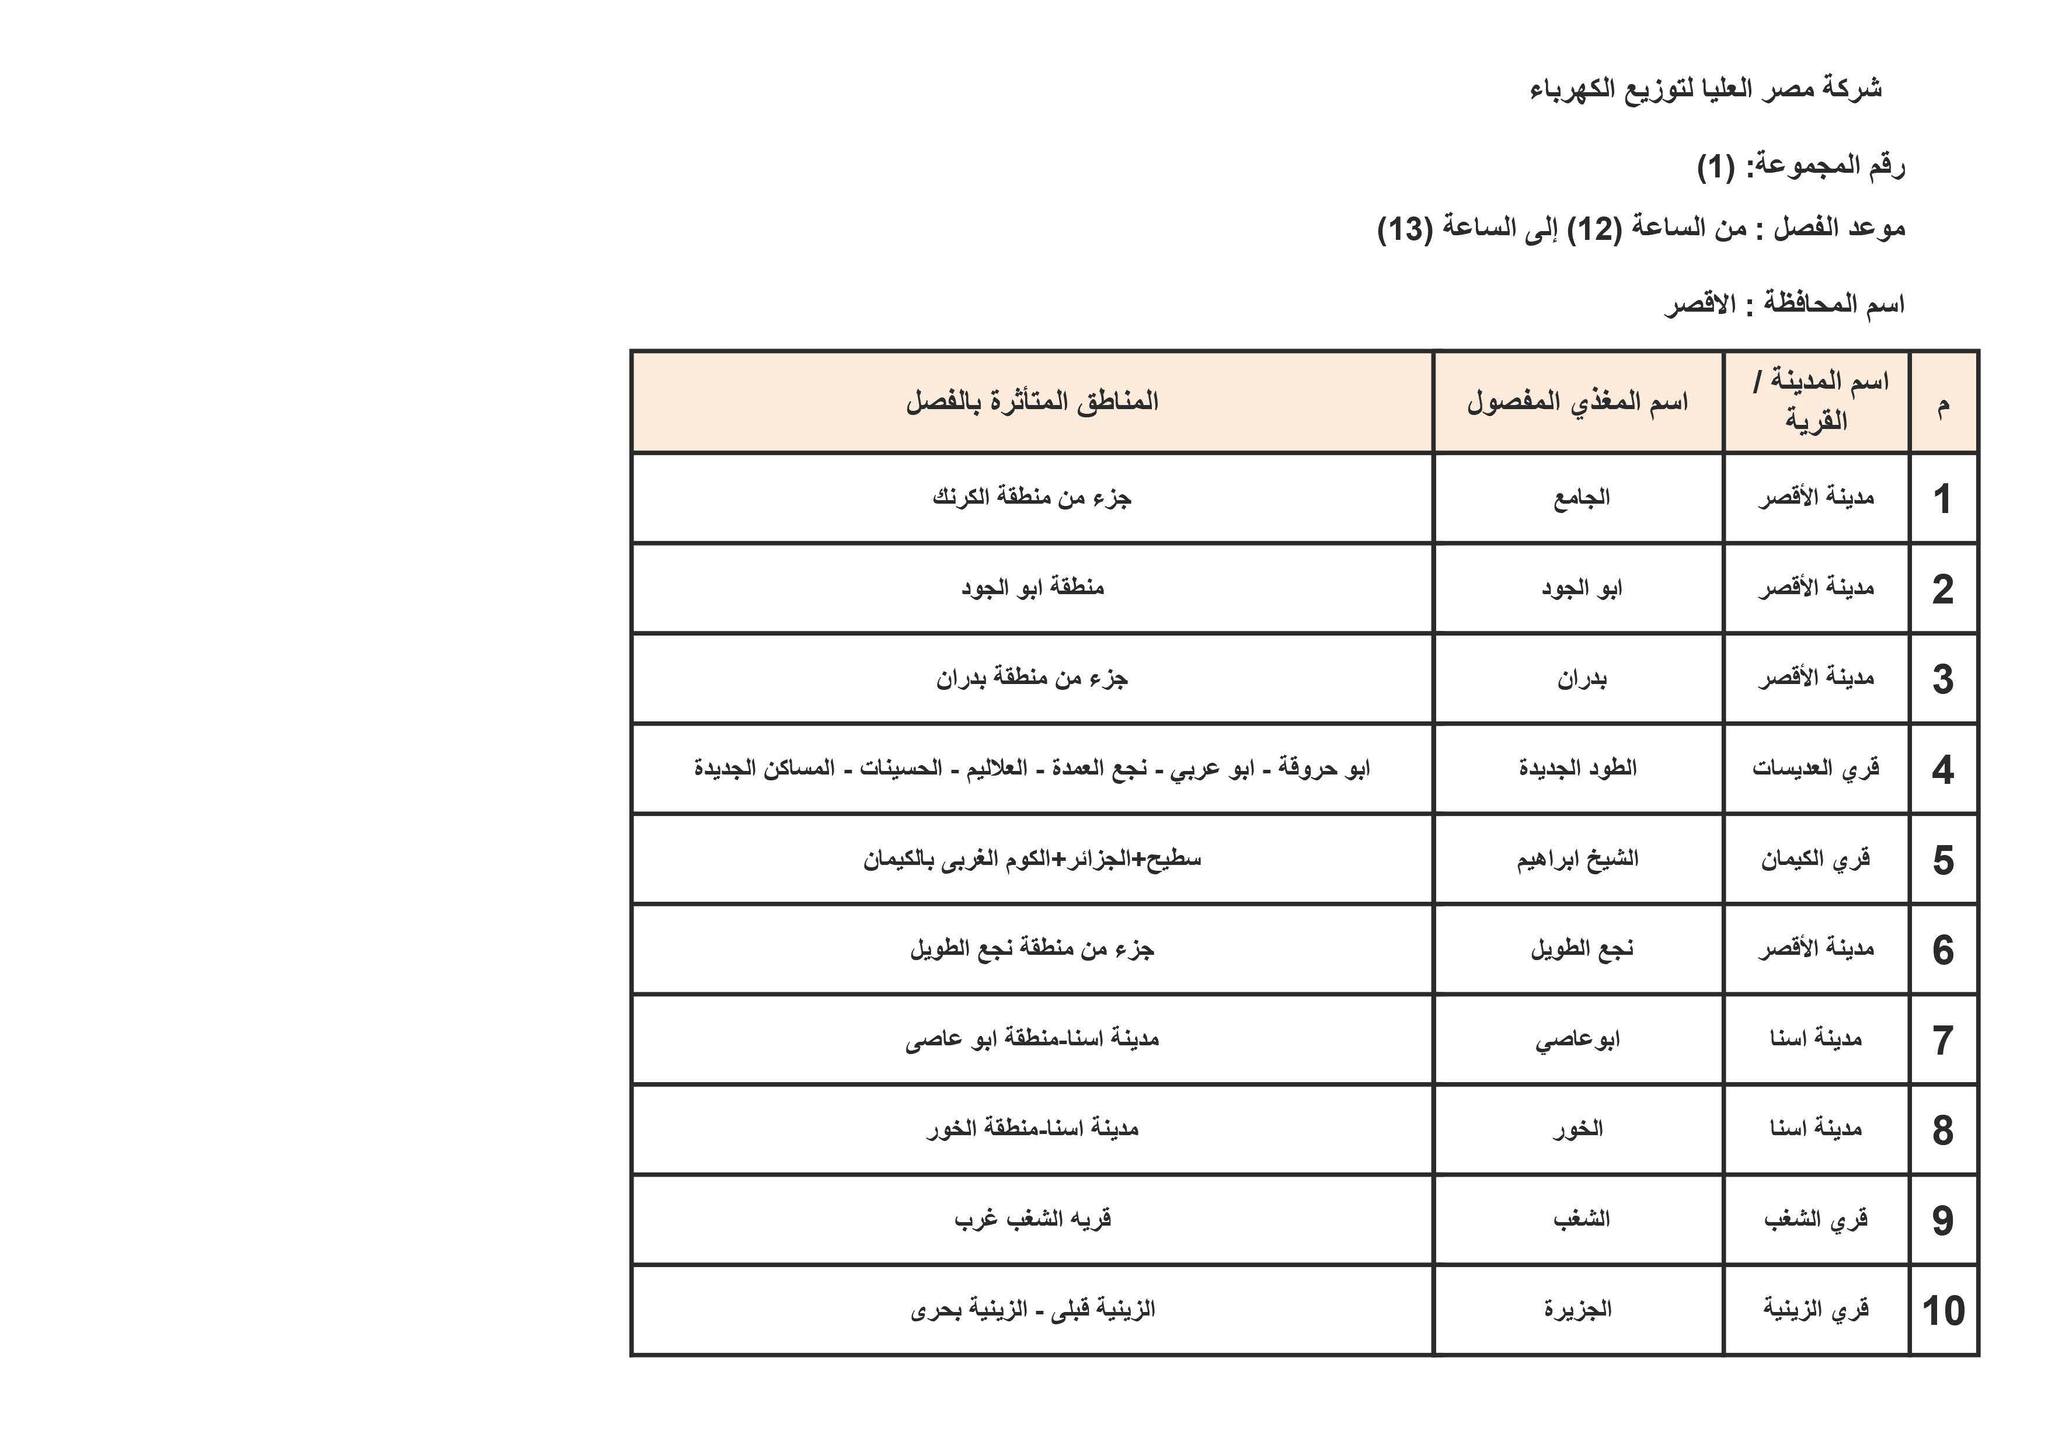 الإعلان عن خطة تخفيف أحمال الكهرباء في محافظة الأقصر 1